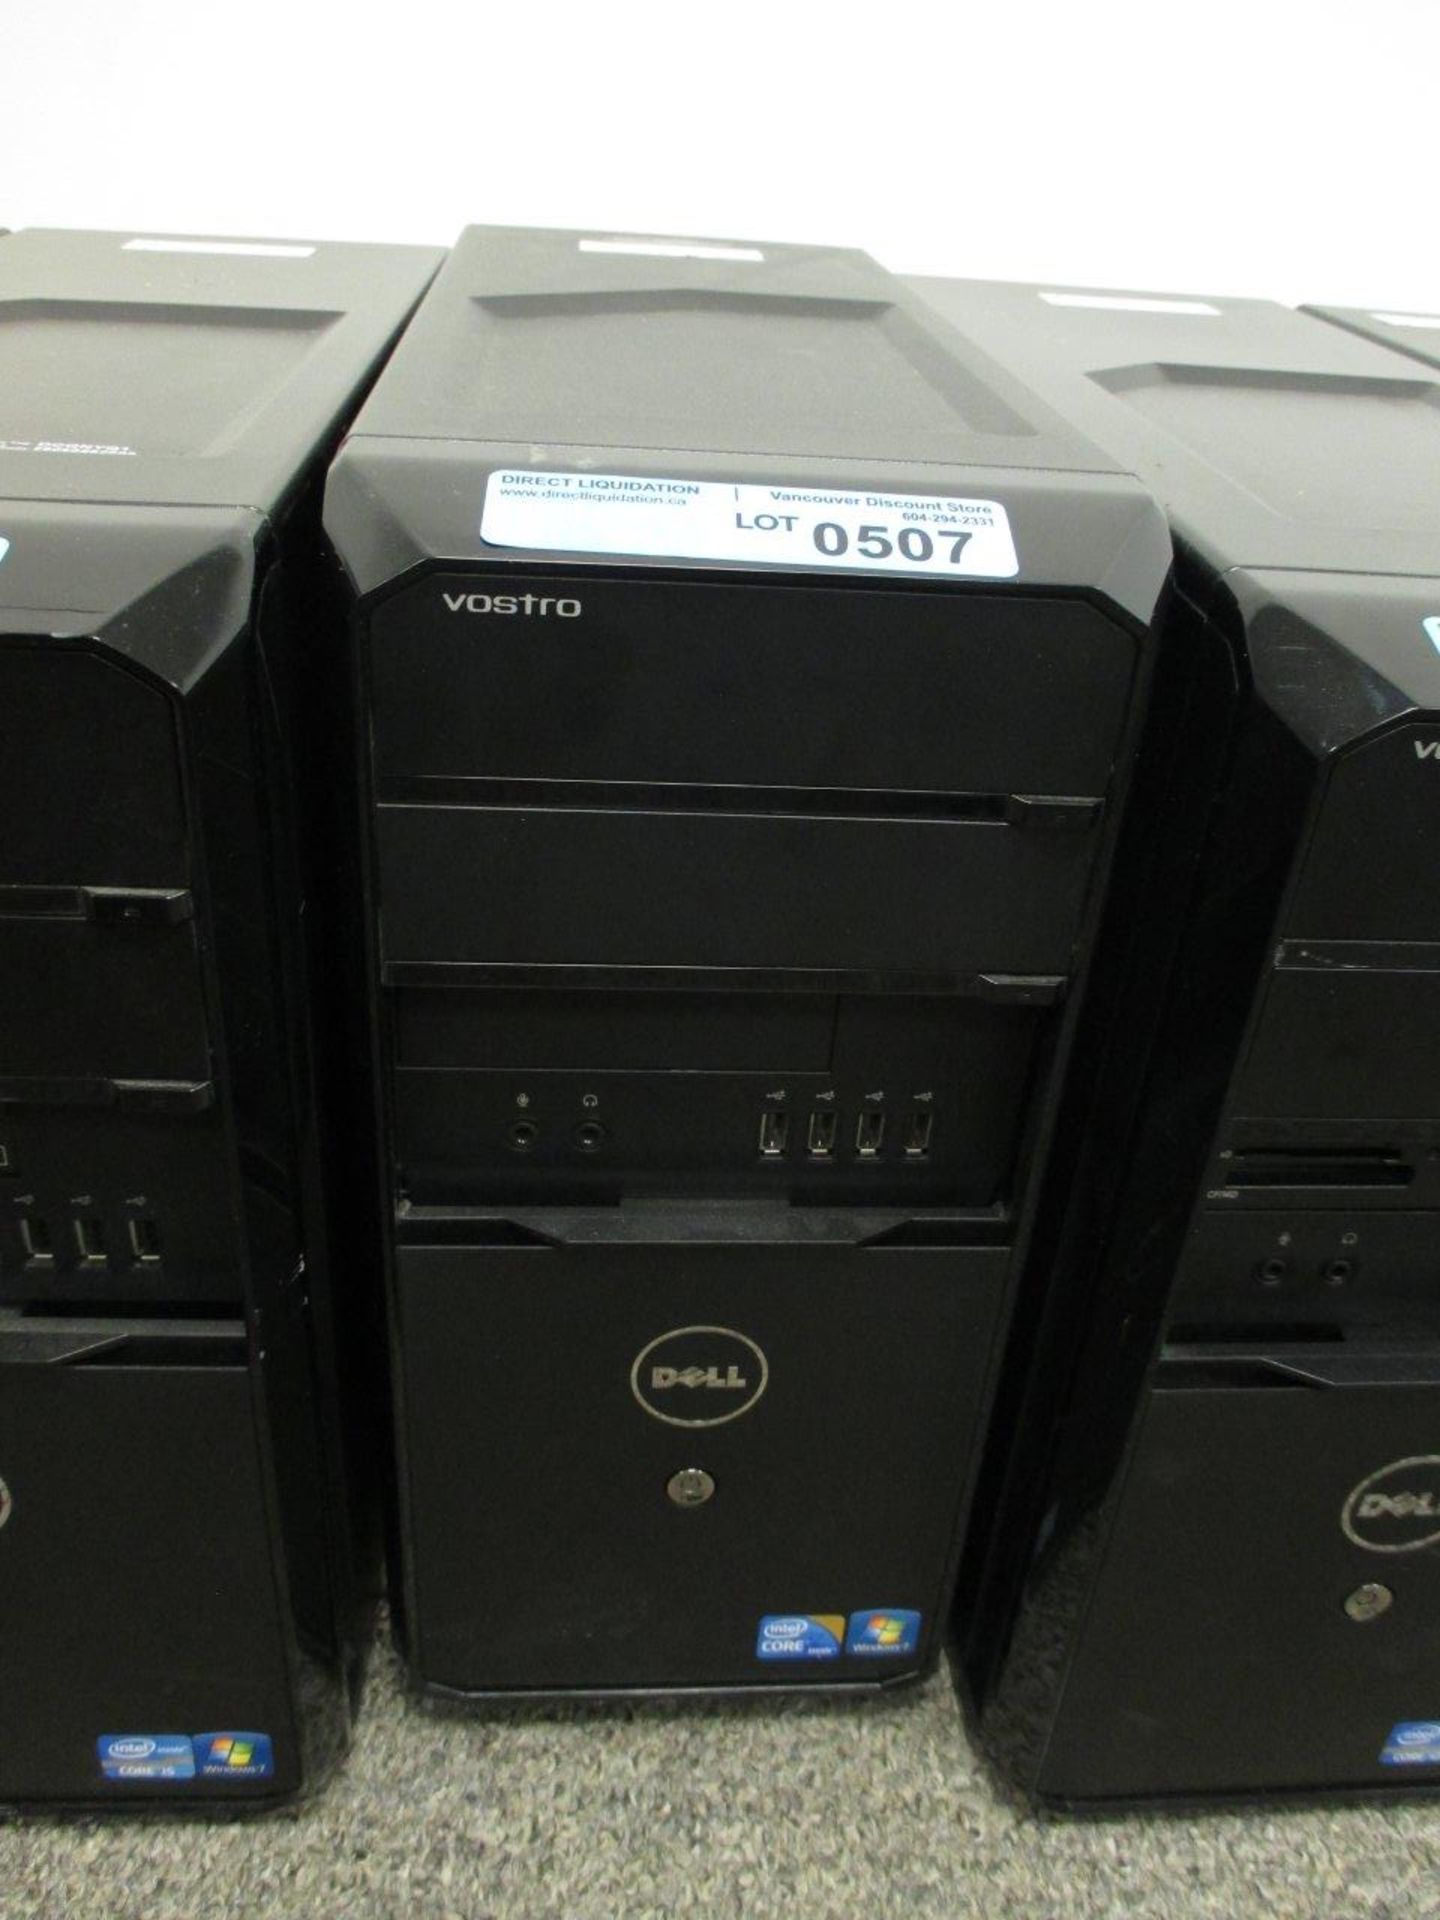 Dell Vostro Tower Computer I7 Processor